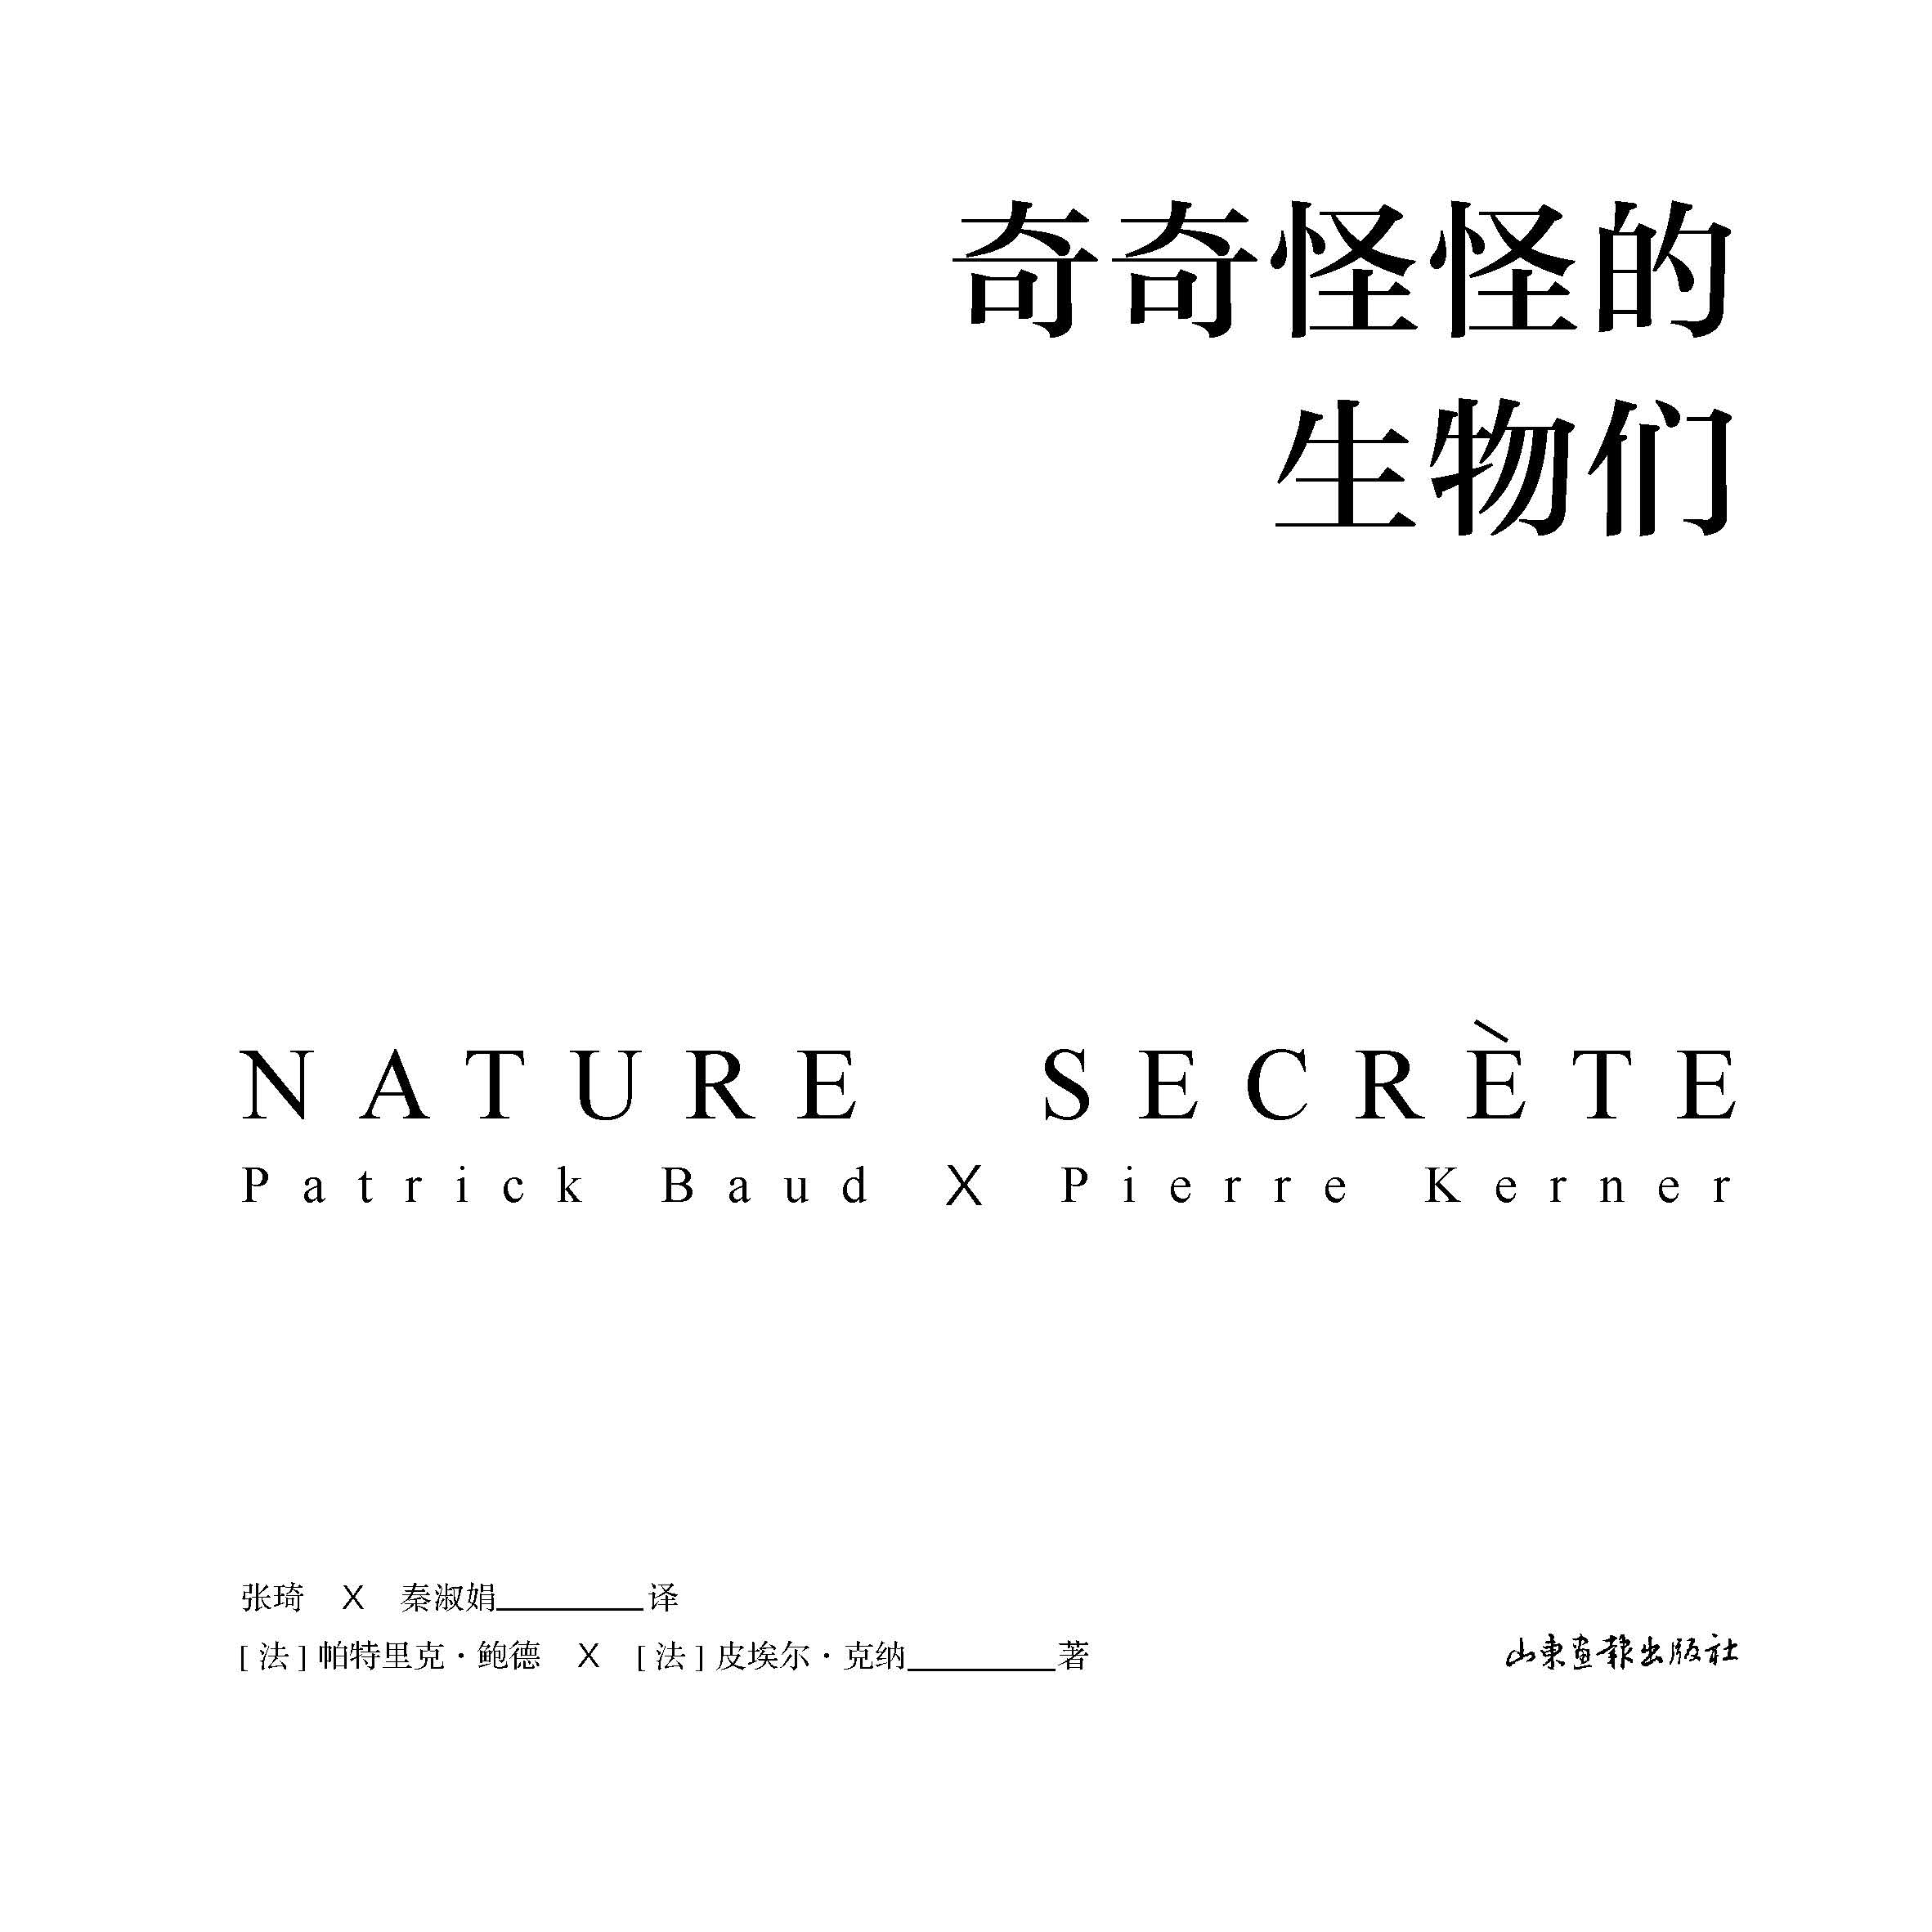 Nature Secrète, bientôt disponible en Chinois!